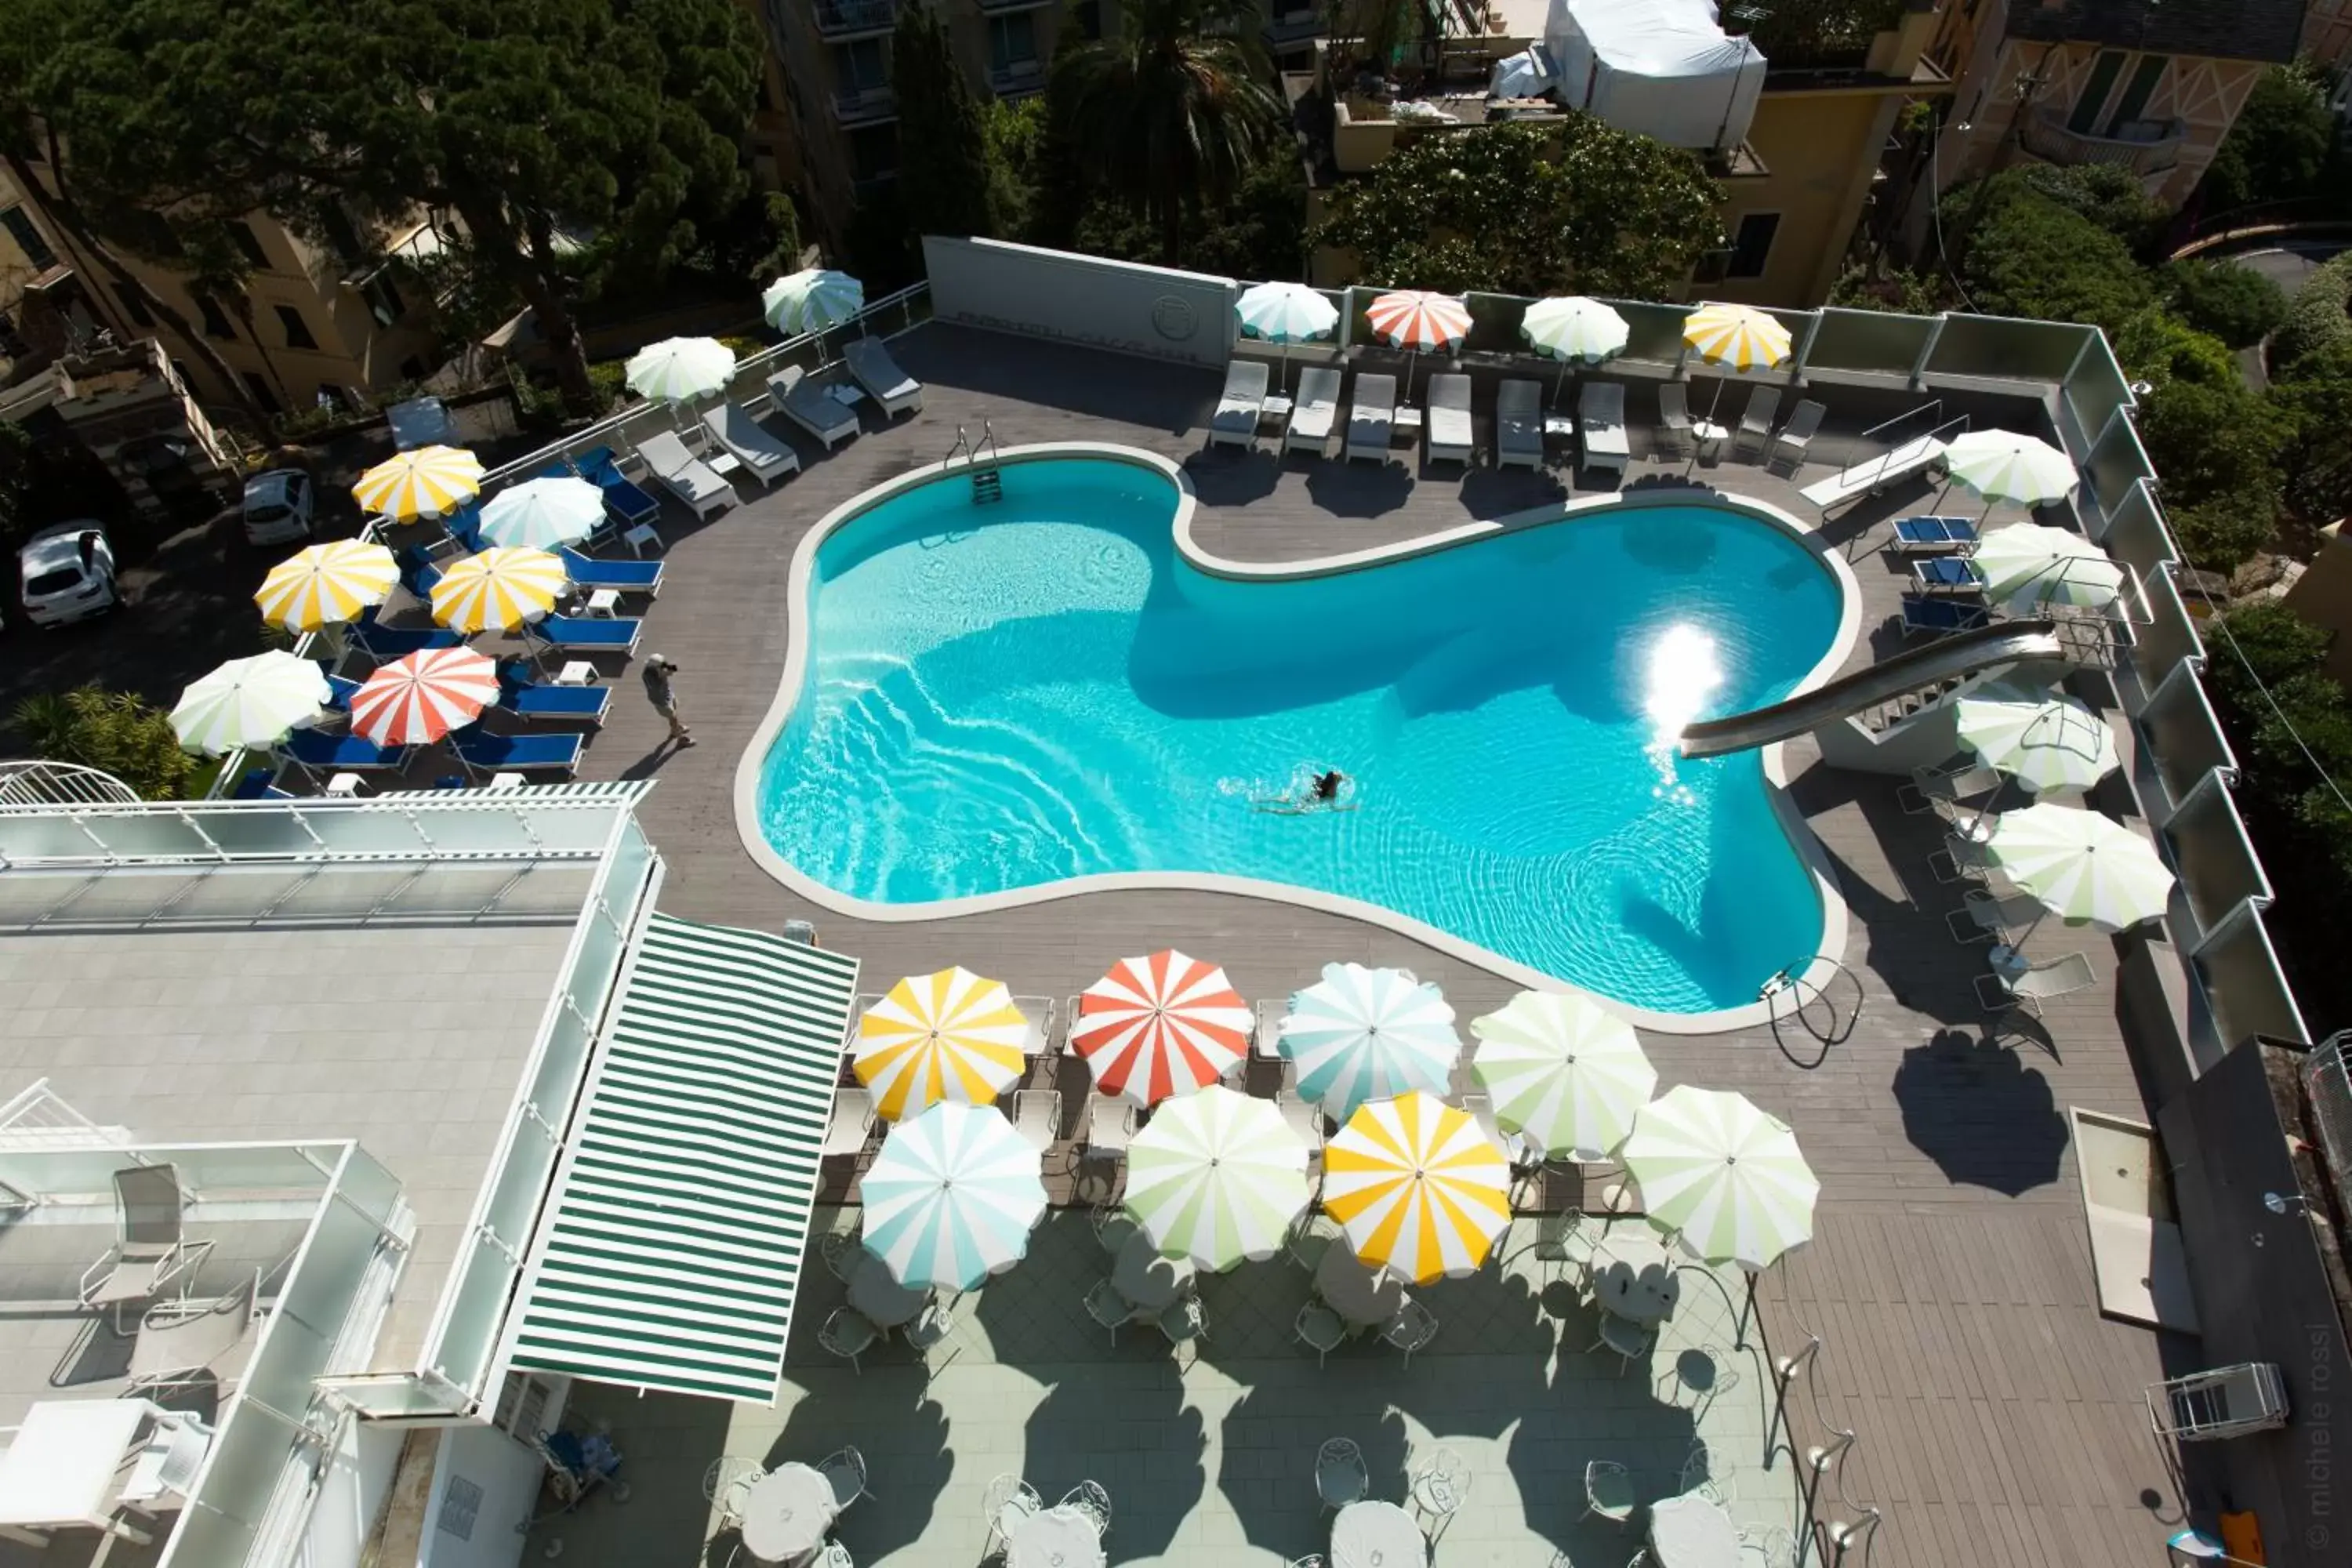 Pool View in B&B Hotels Park Hotel Suisse Santa Margherita Ligure